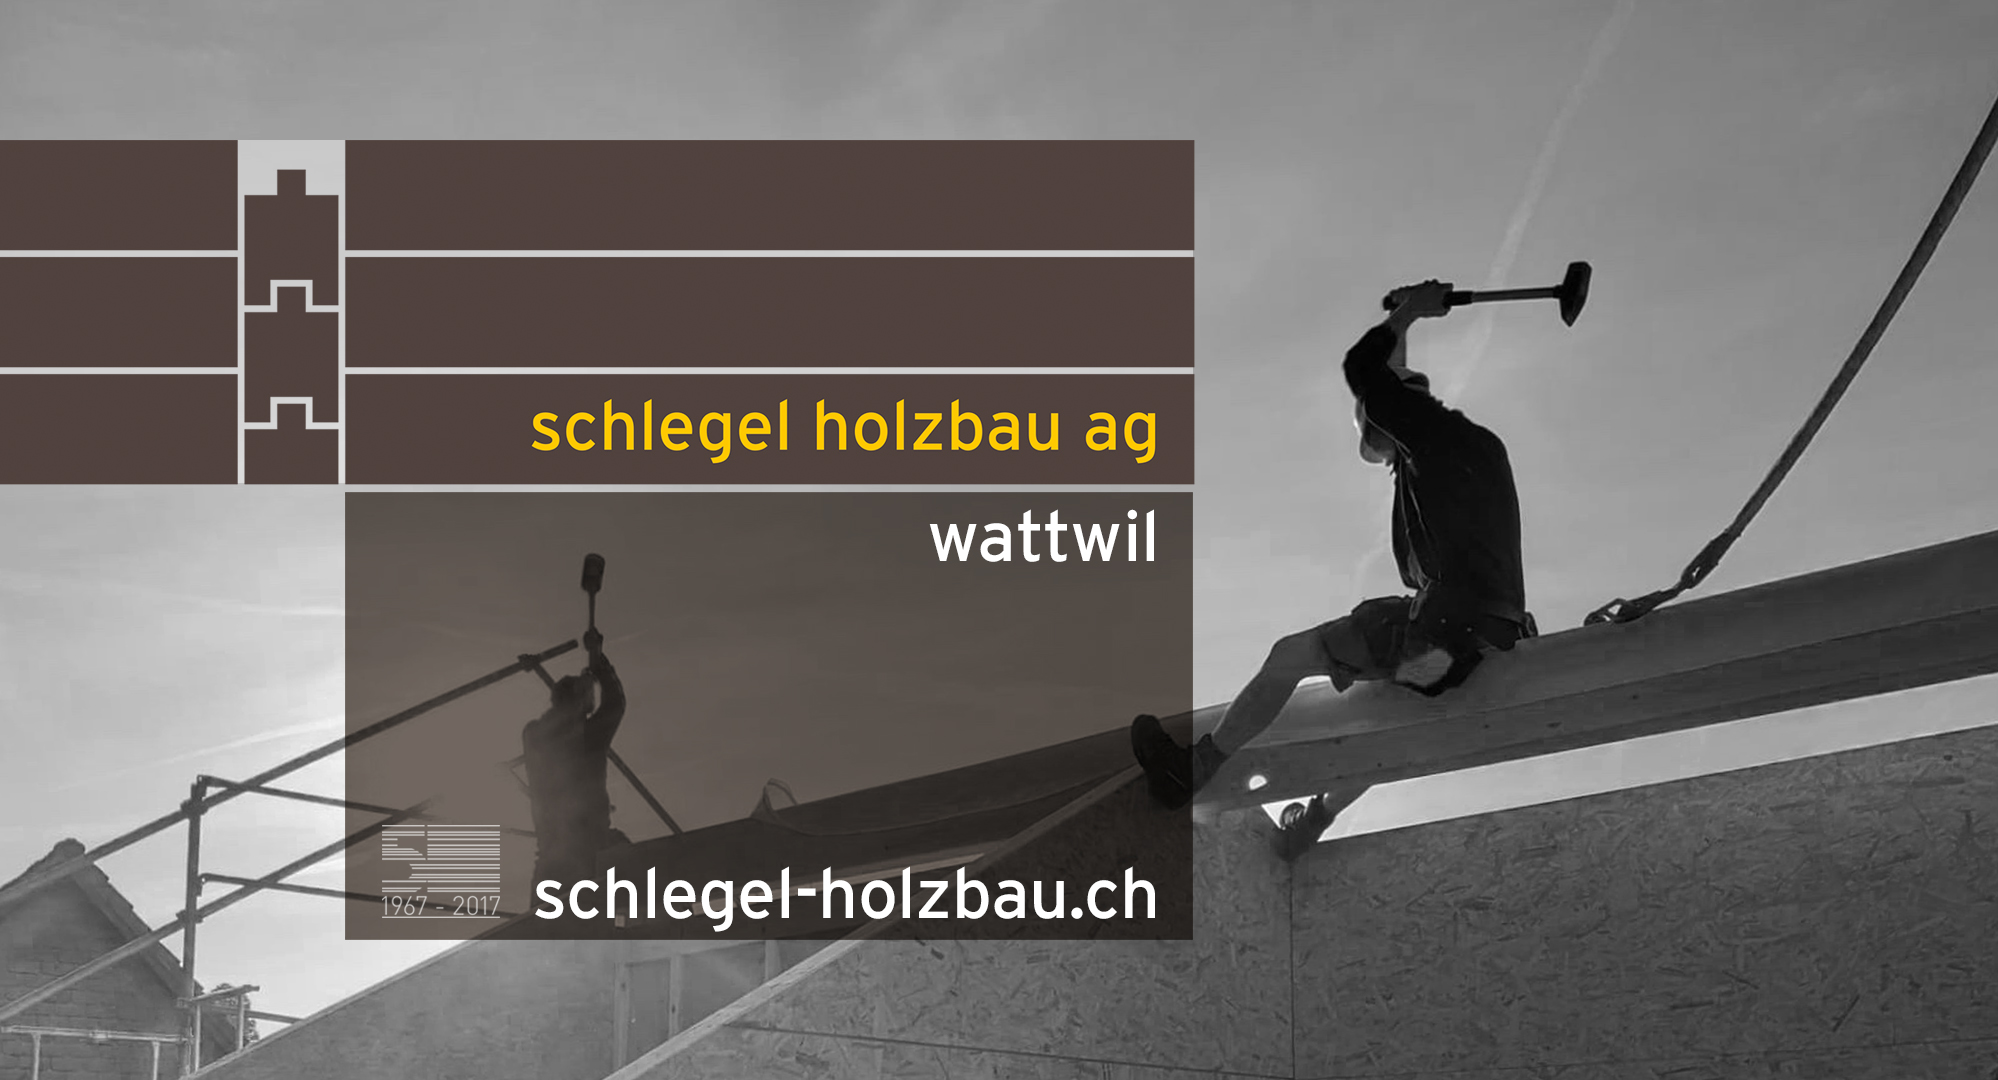 (c) Schlegel-holzbau.ch